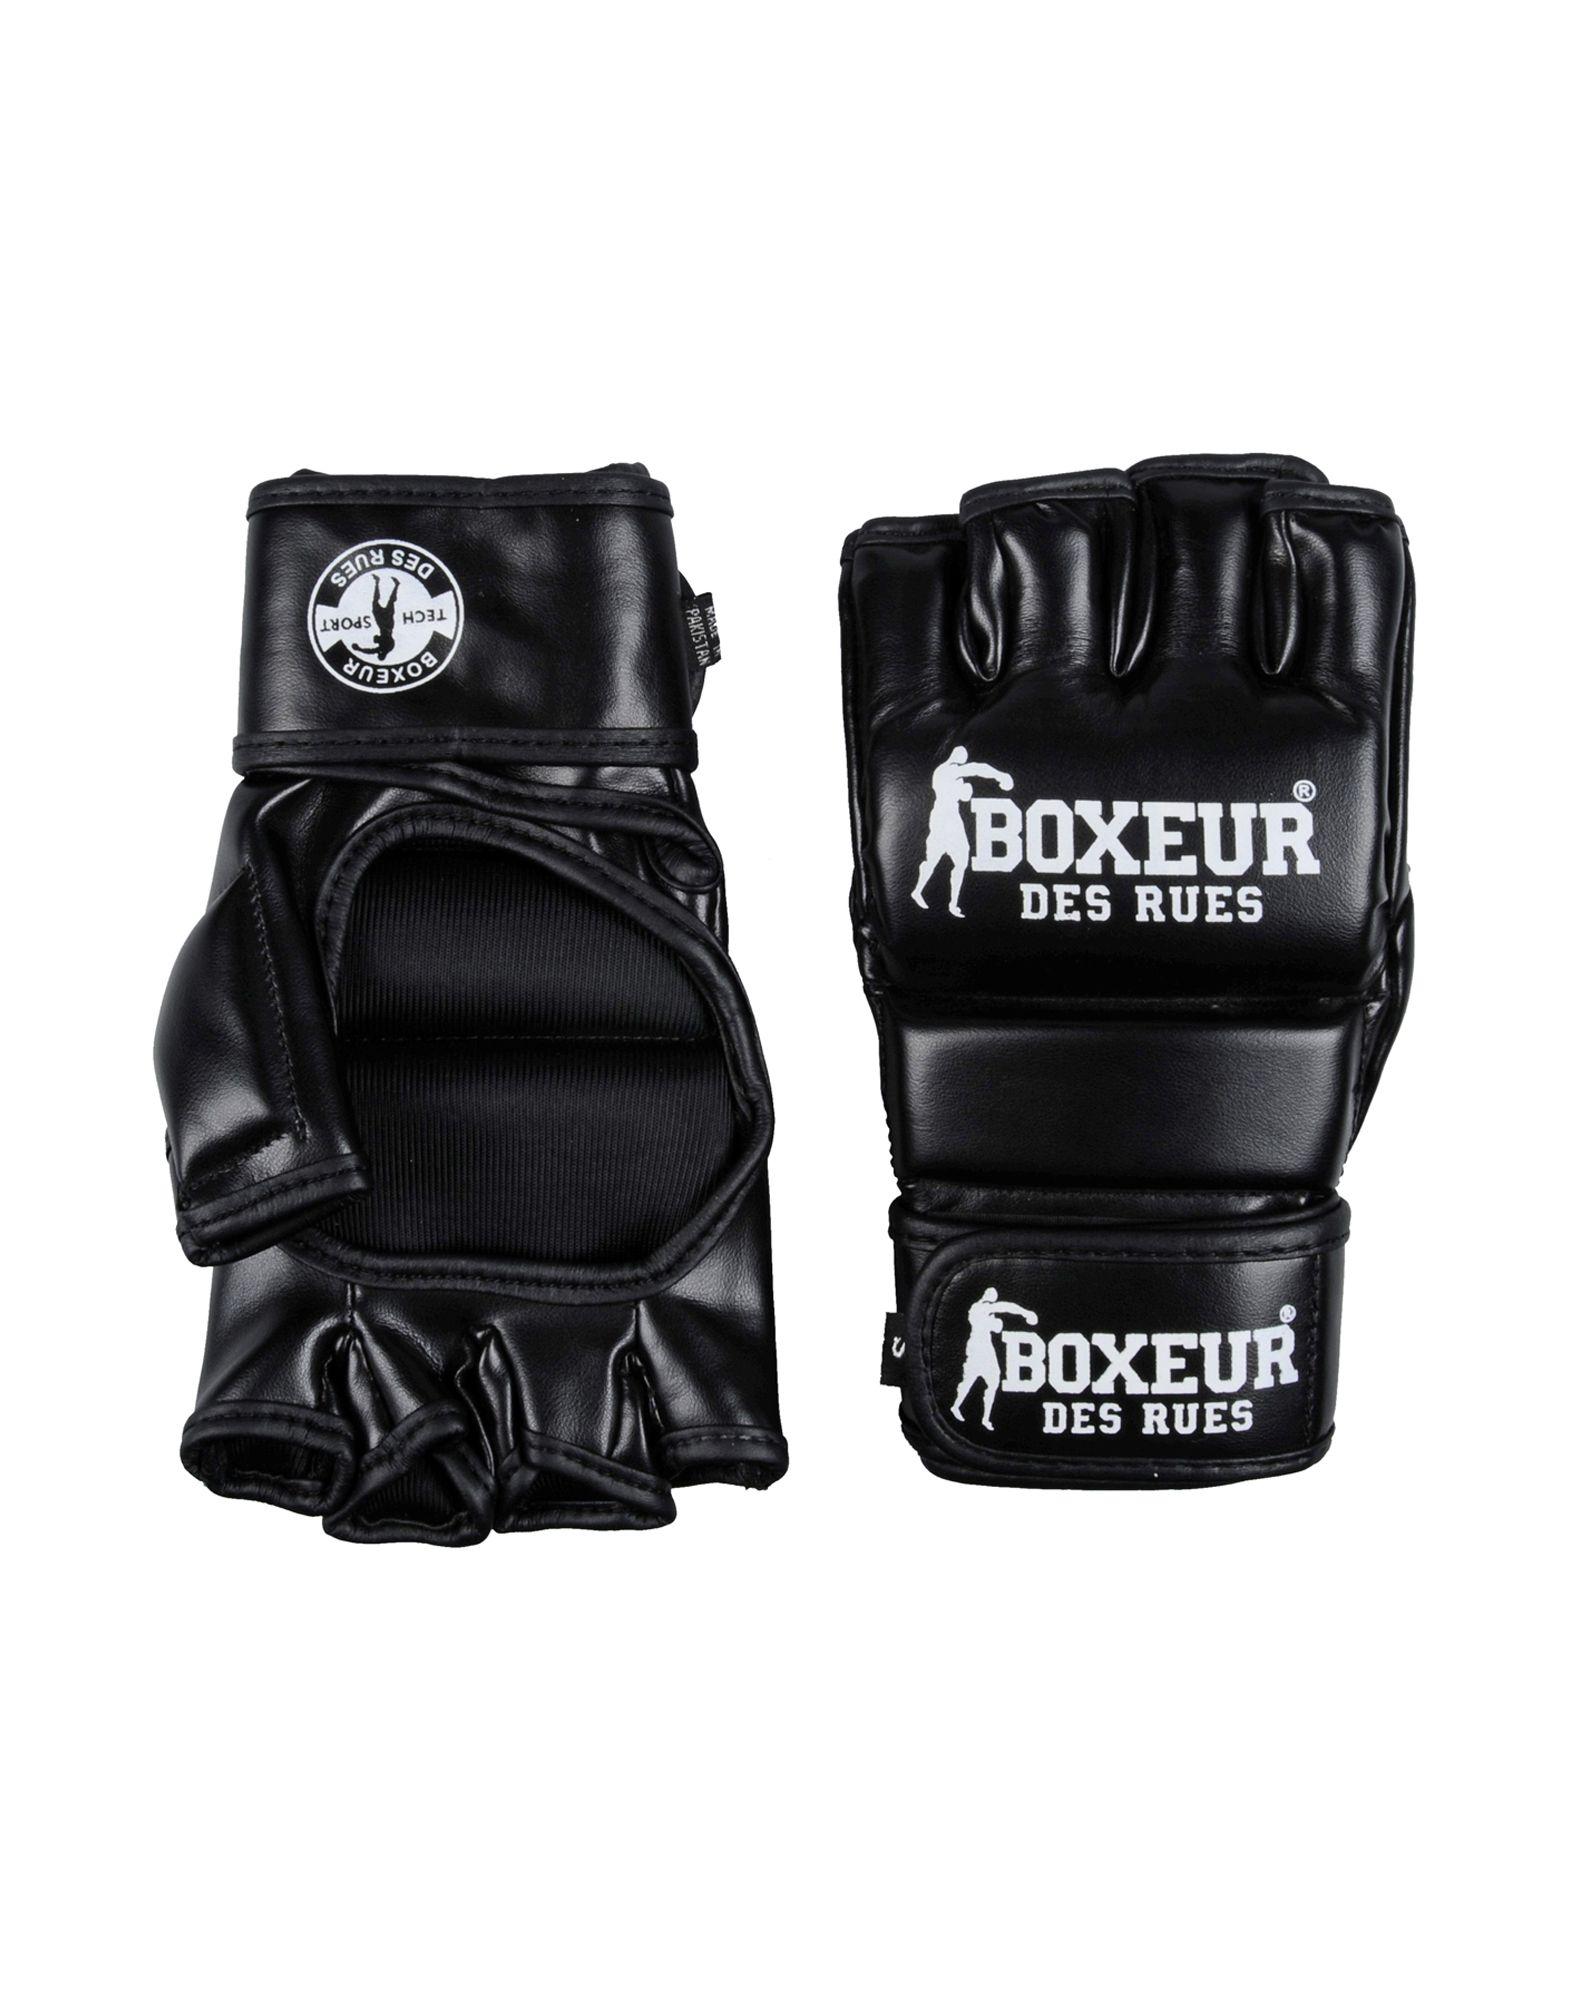 BOXEUR DES RUES Unisex Black Bag Gloves